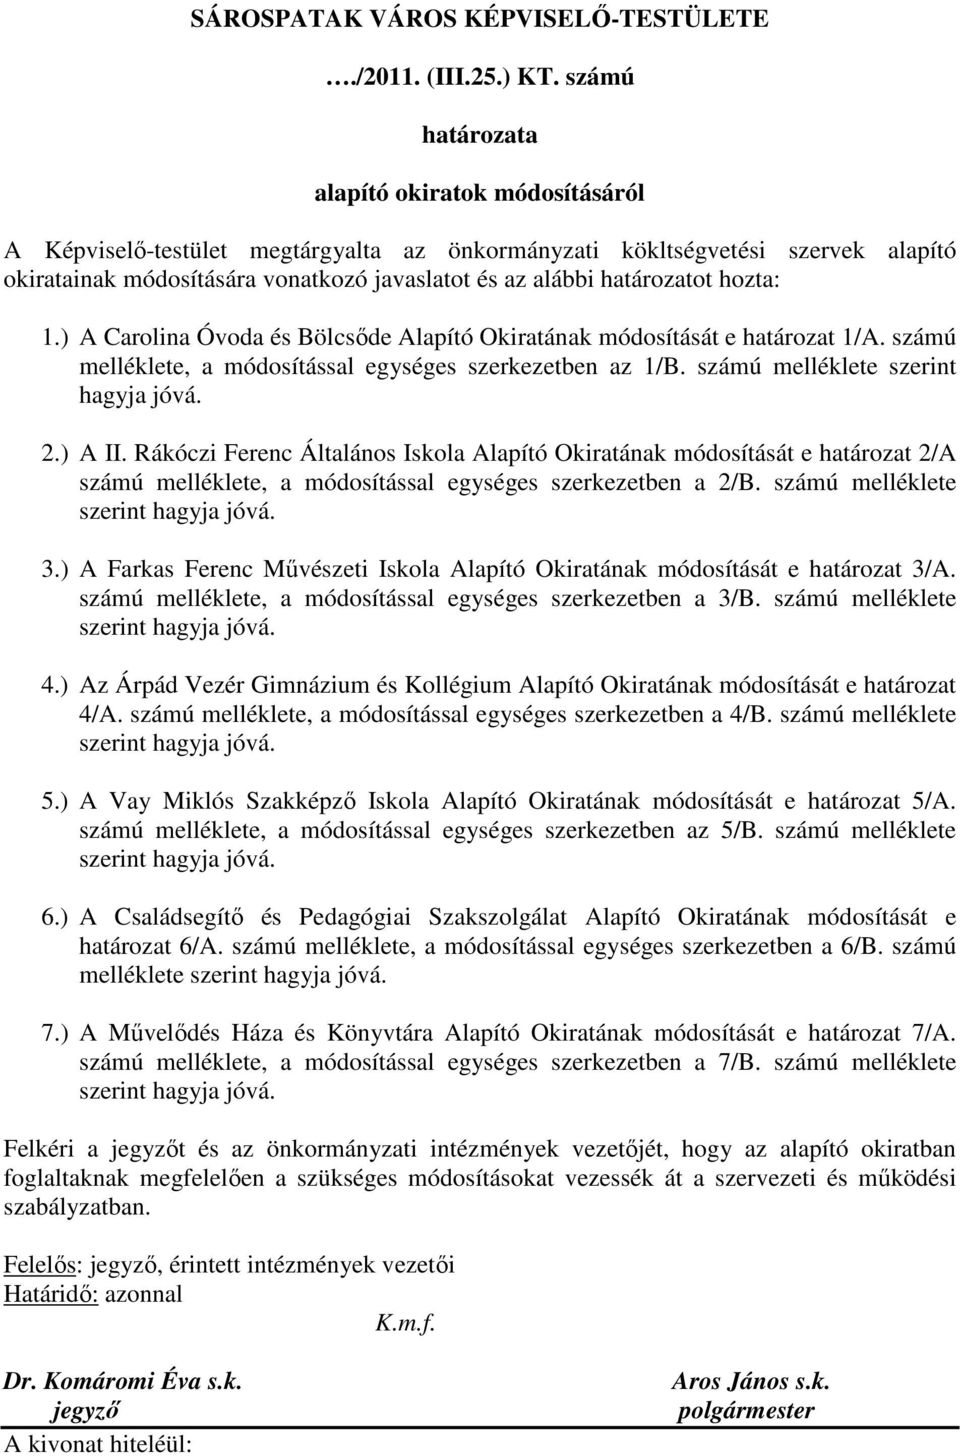 határozatot hozta: 1.) A Carolina Óvoda és Bölcsıde Alapító Okiratának módosítását e határozat 1/A. számú melléklete, a módosítással egységes szerkezetben az 1/B. számú melléklete szerint hagyja jóvá.